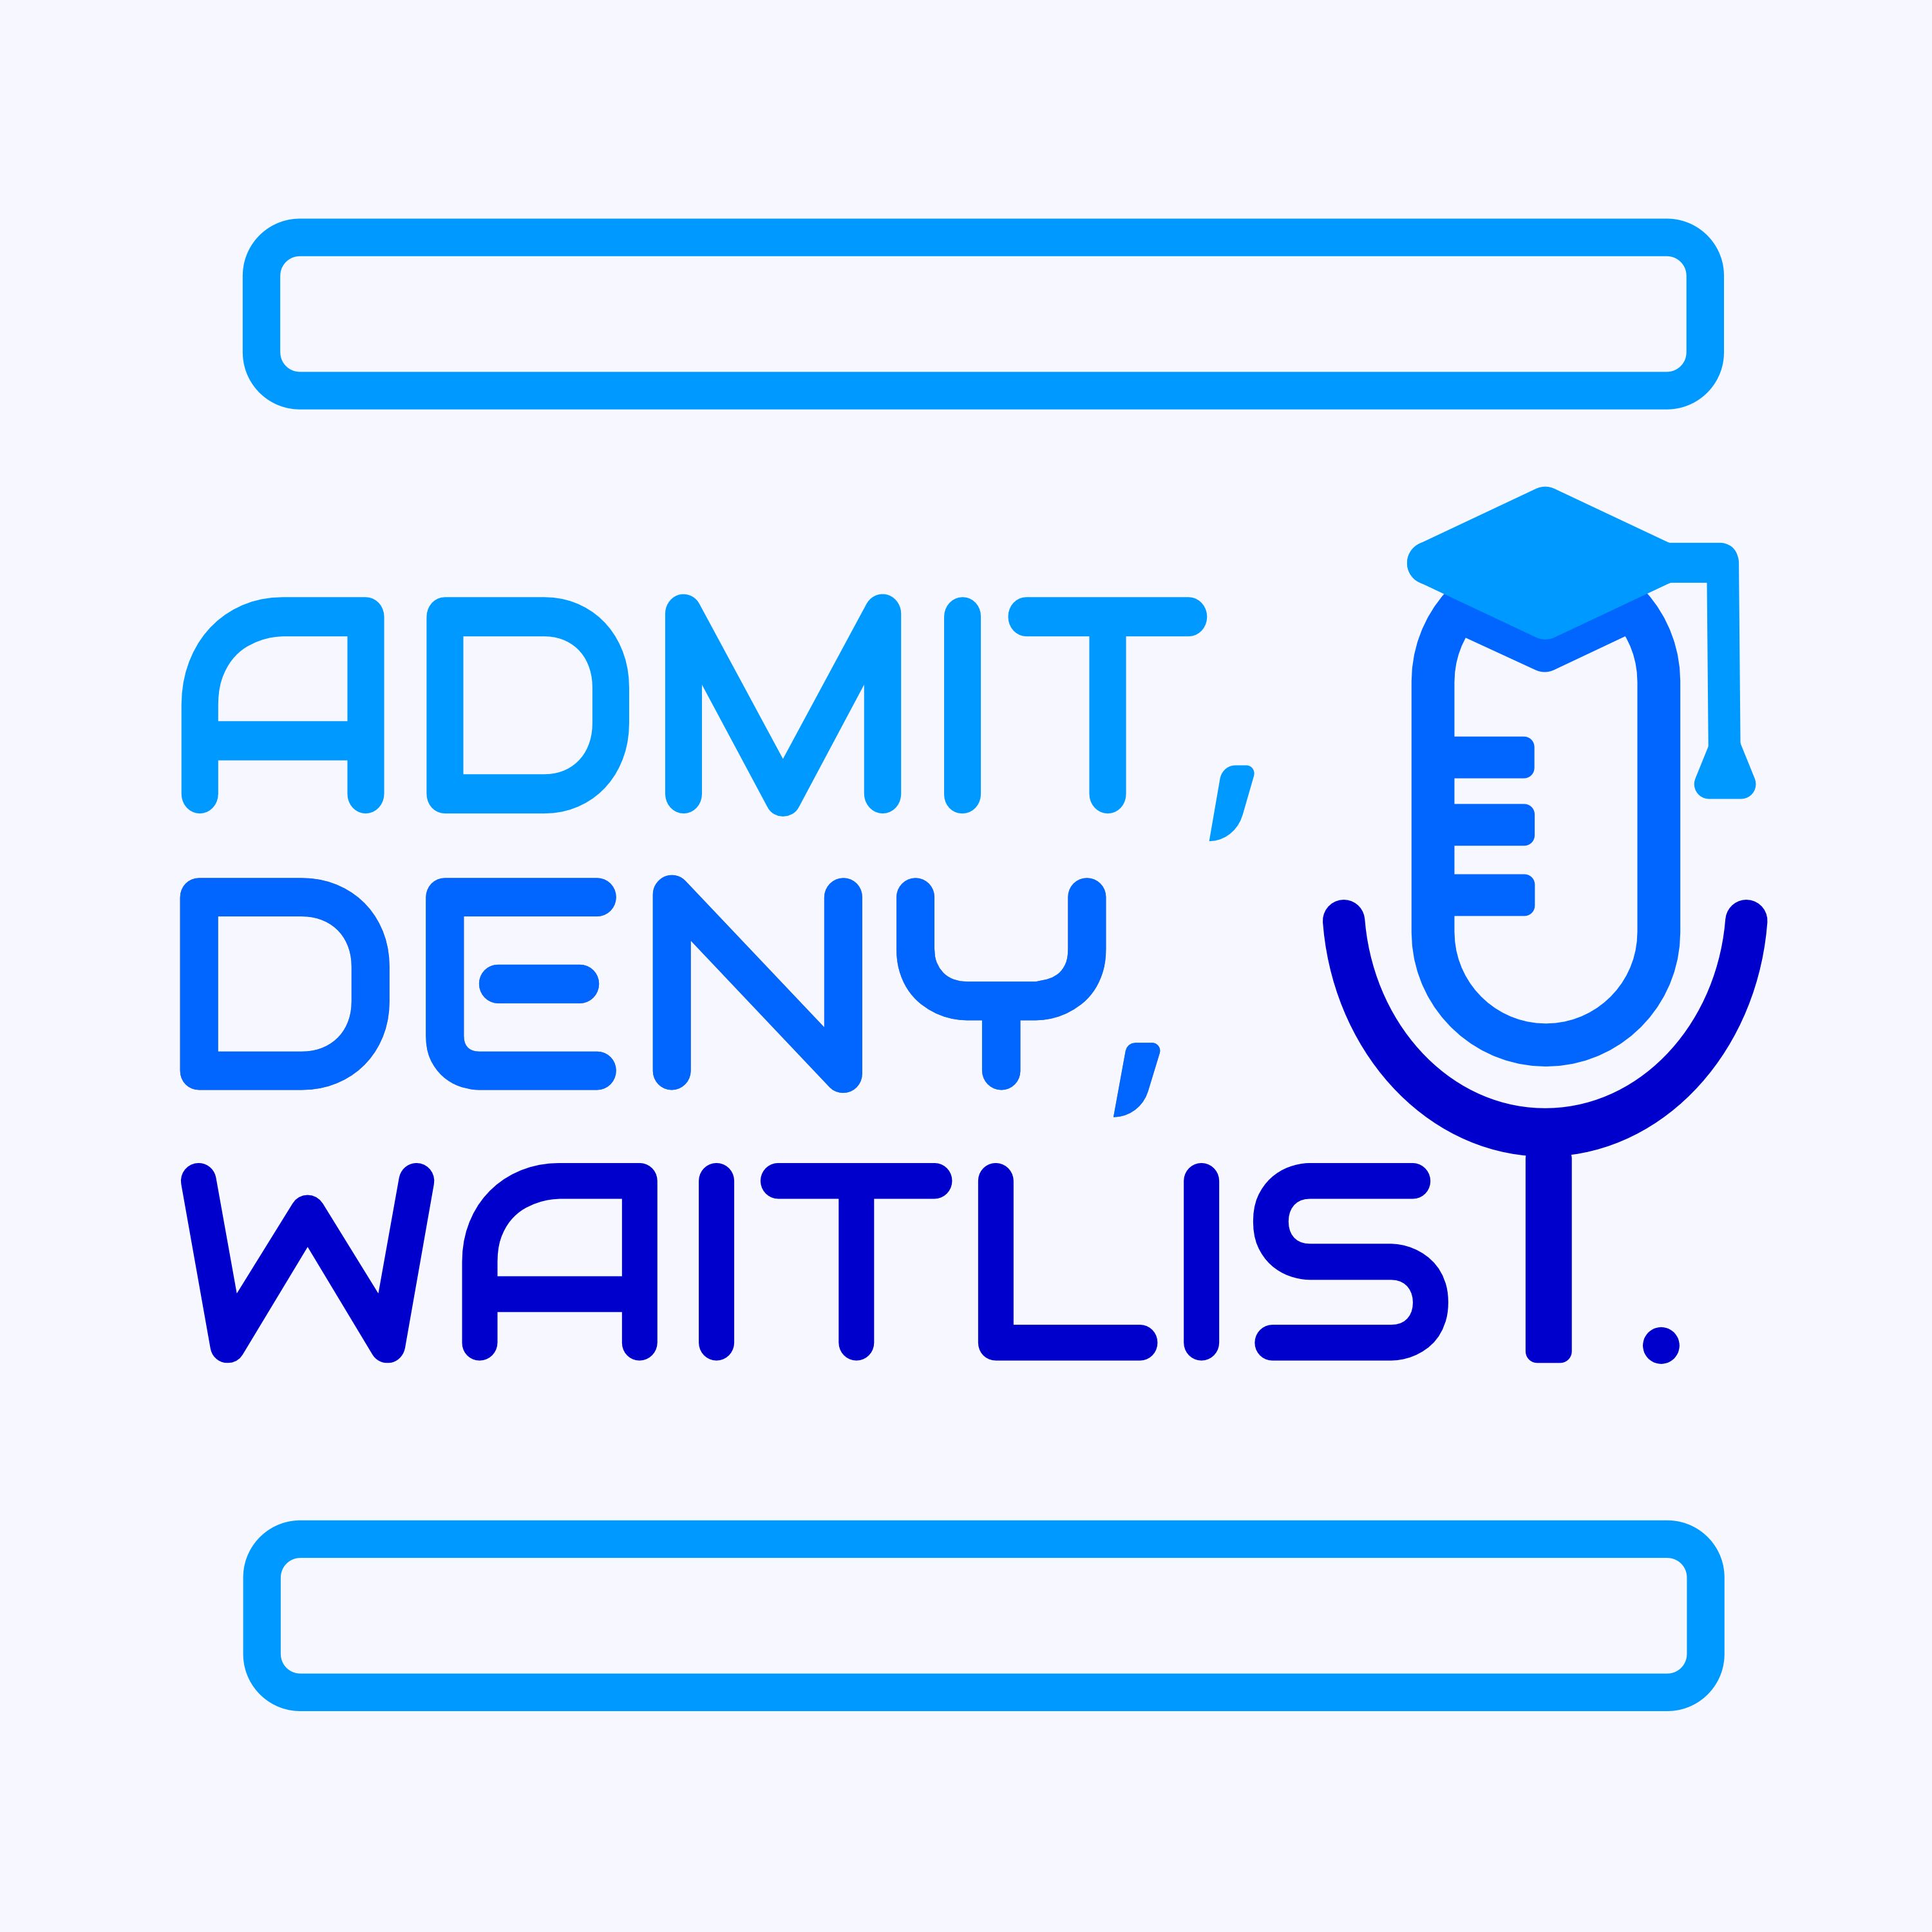 Admit Deny Waitlist